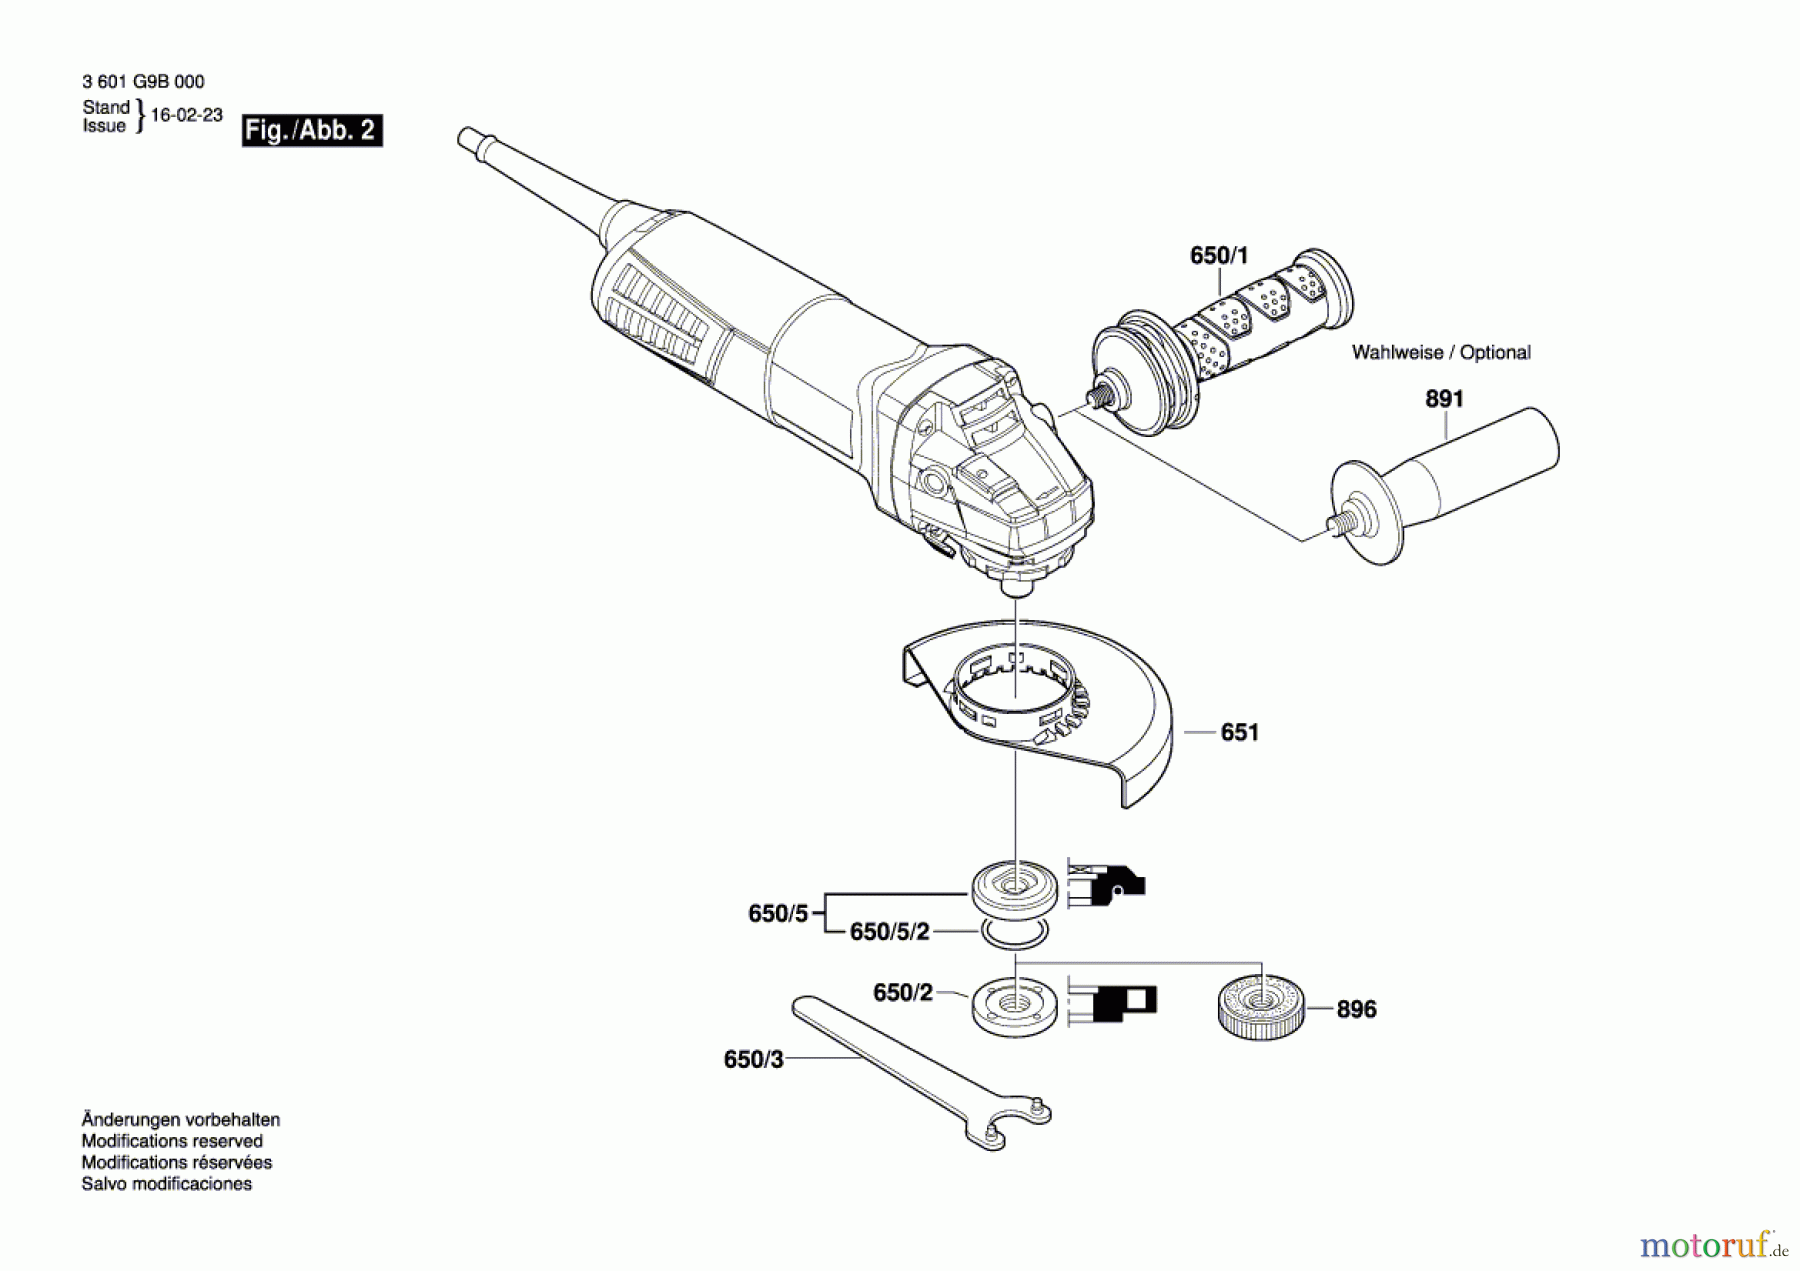  Bosch Werkzeug Winkelschleifer GWS 11-125 Seite 2